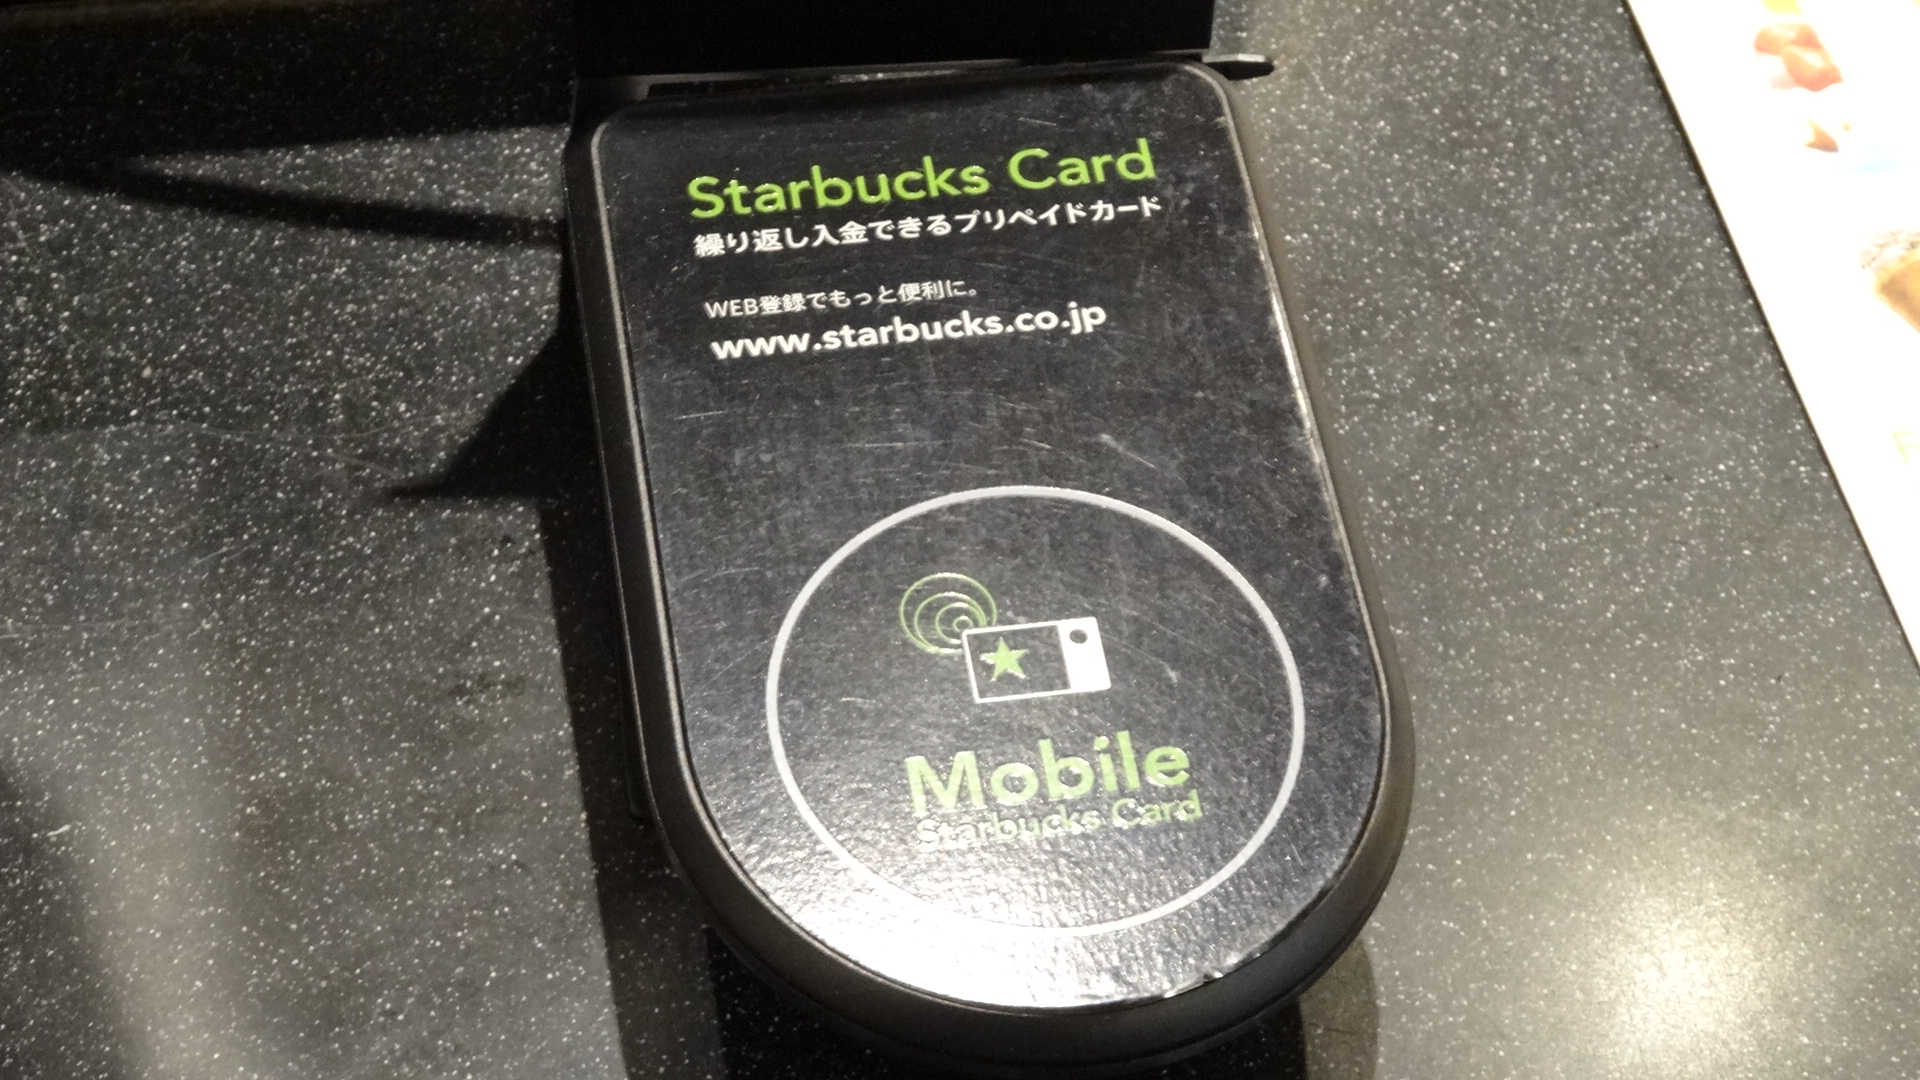 スタバの支払いはiphoneケースでスマートに カップデザインがオシャレな Starbucks Touch 新登場 ガジェット通信 Getnews